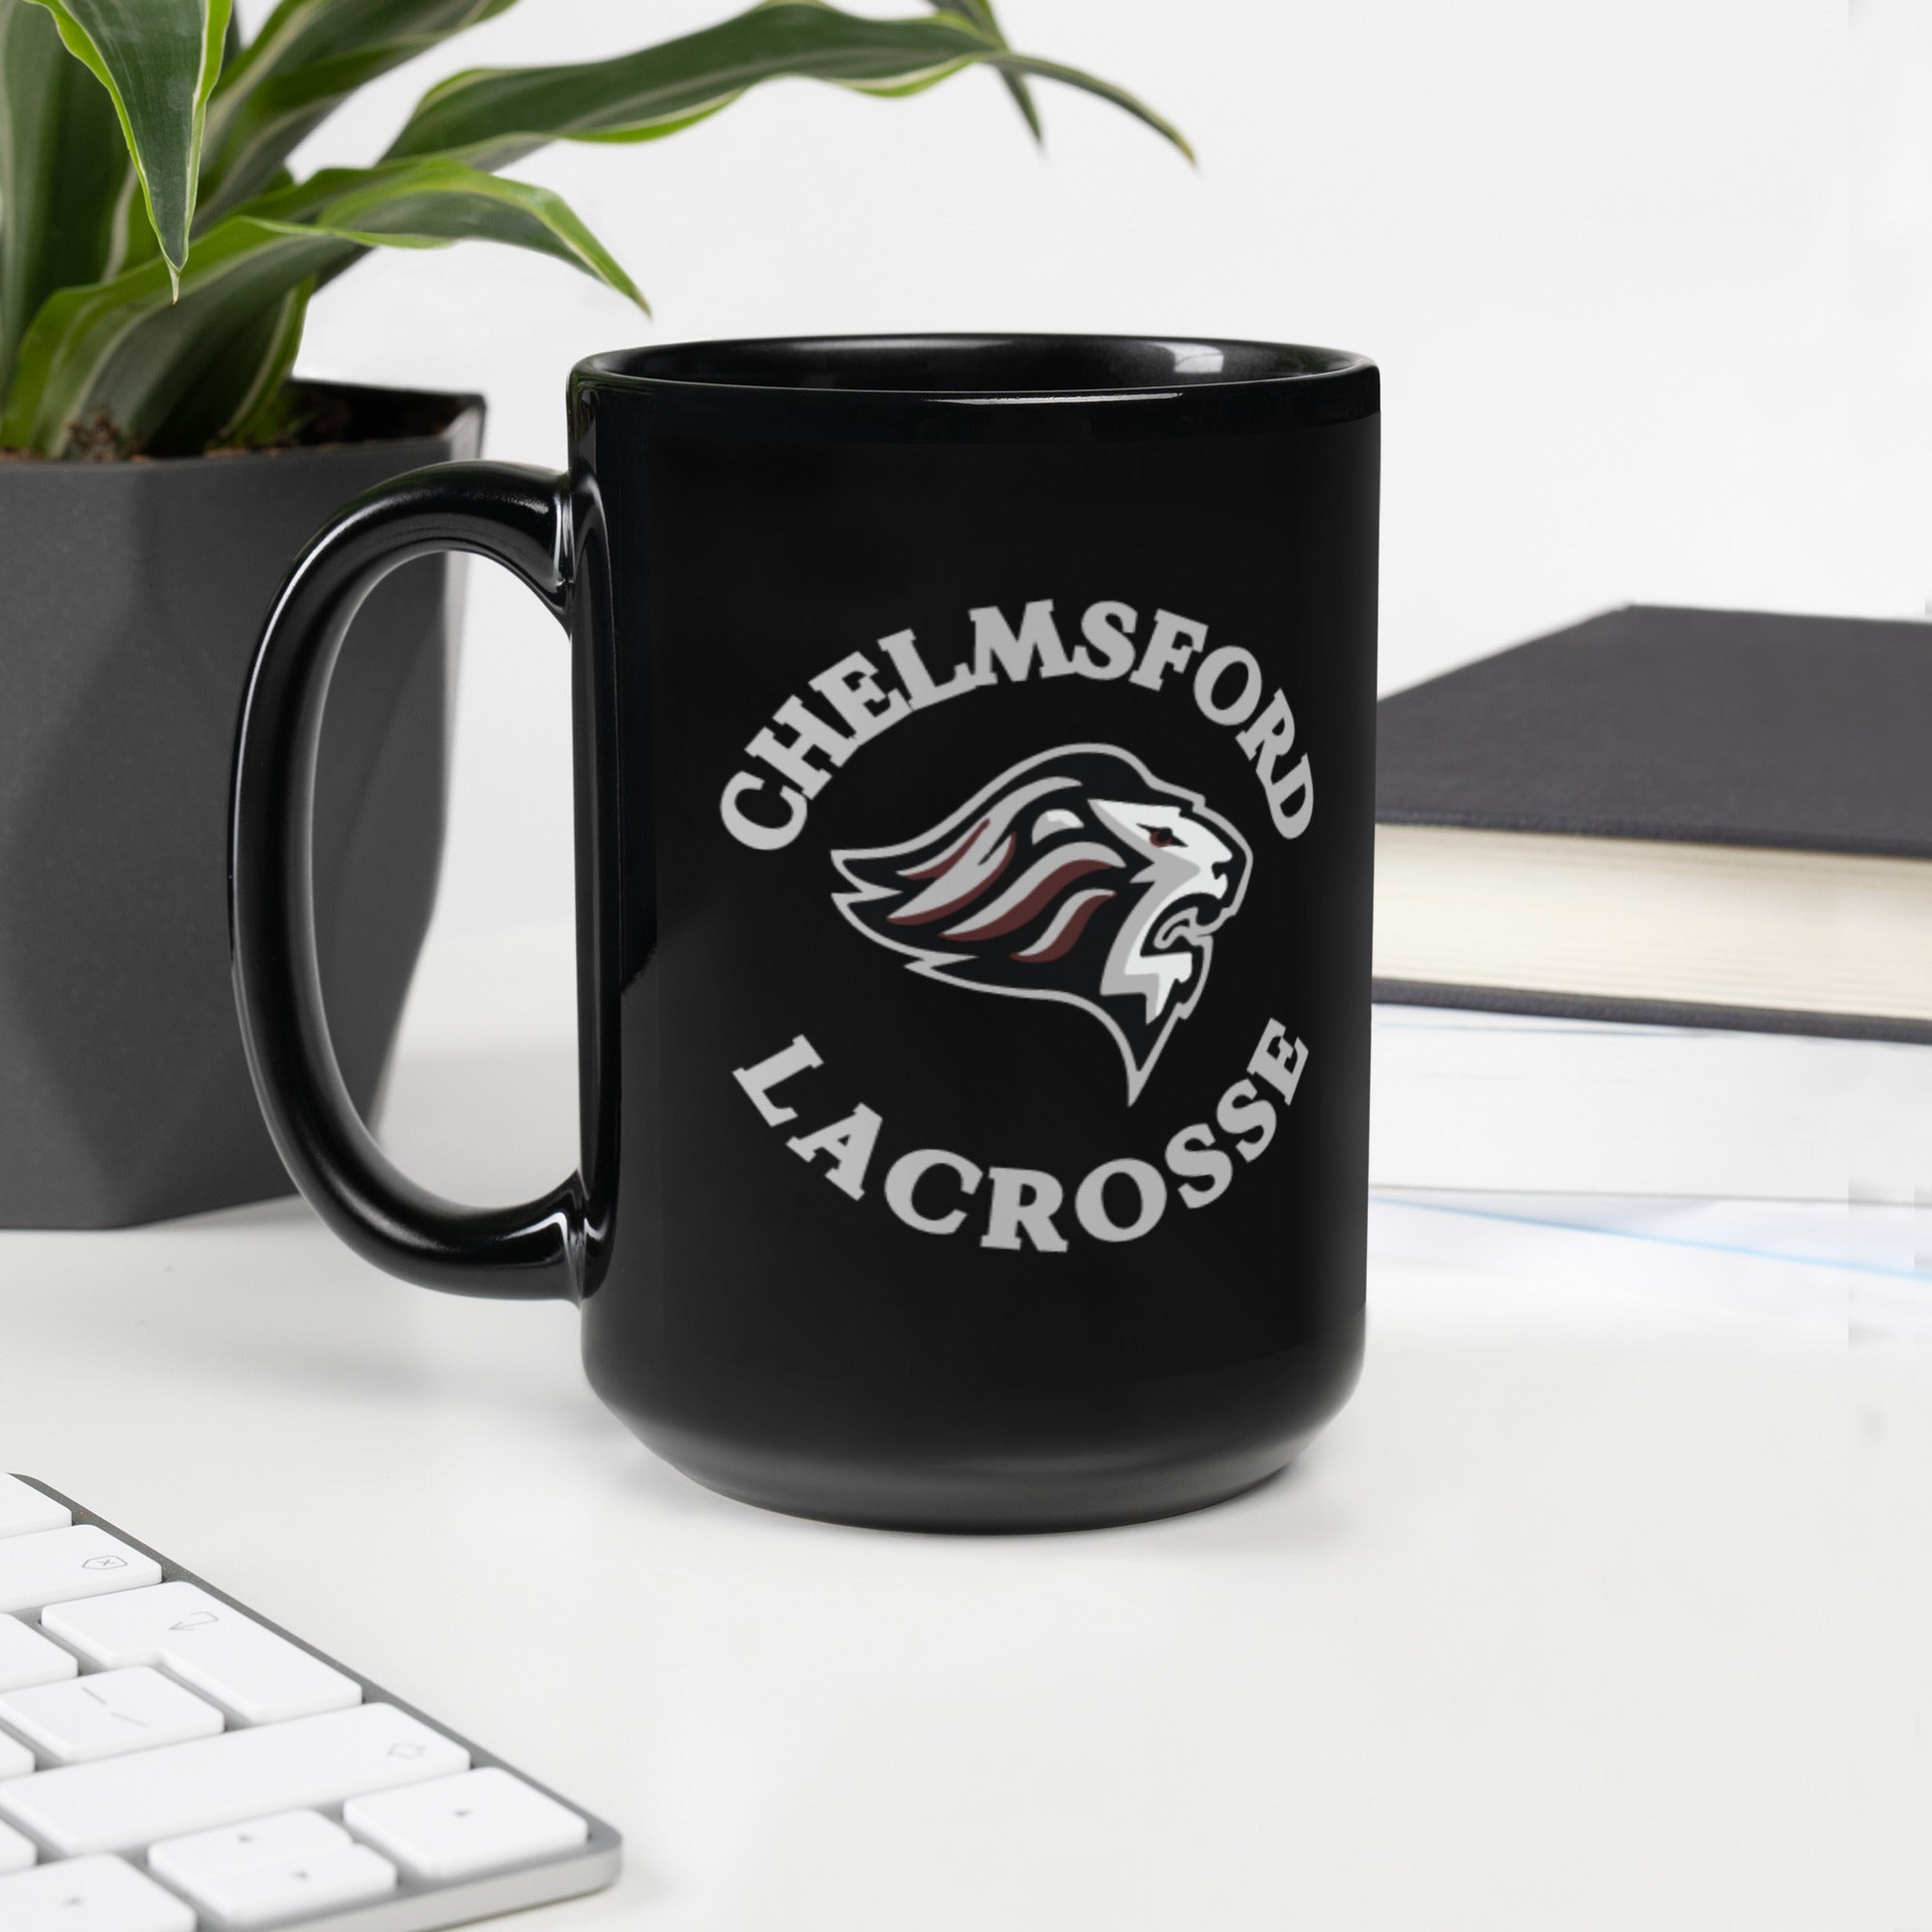 Chelmsford Black Mug